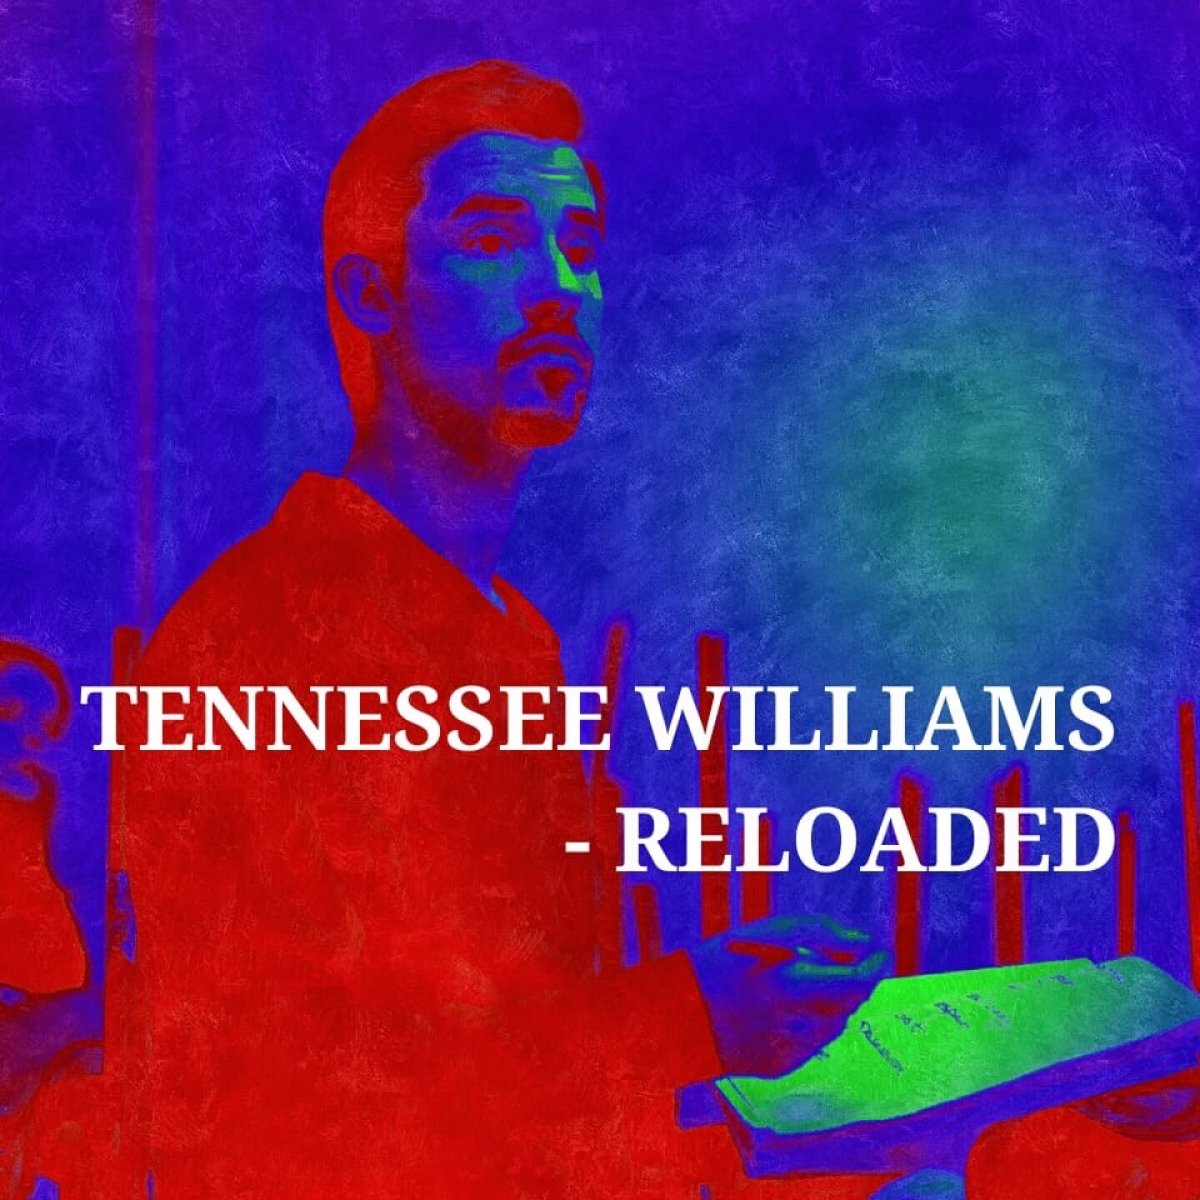 📍В декабре режиссер и хореограф Дэнни Дэннис начинает в РГИСИ репетиции нового спектакля – "Tennessee Williams – Reloaded" («Теннесси Уильямс: Перезагрузка»).